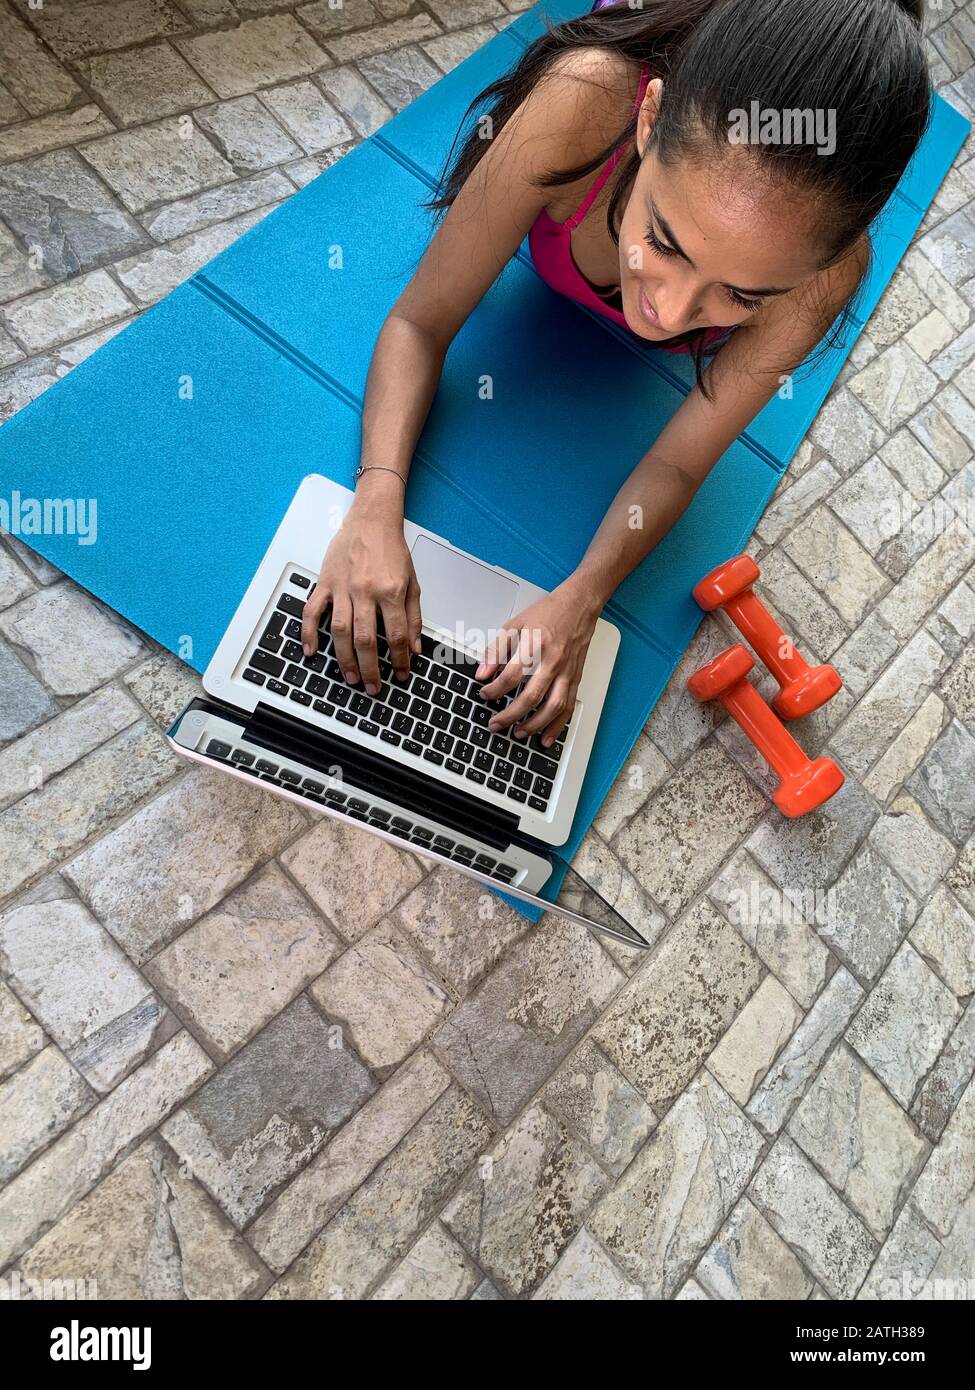 Lateinisches Mädchen, das zu Hause mit einem Laptop trainiert, Panama, Mittelamerika Stockfoto